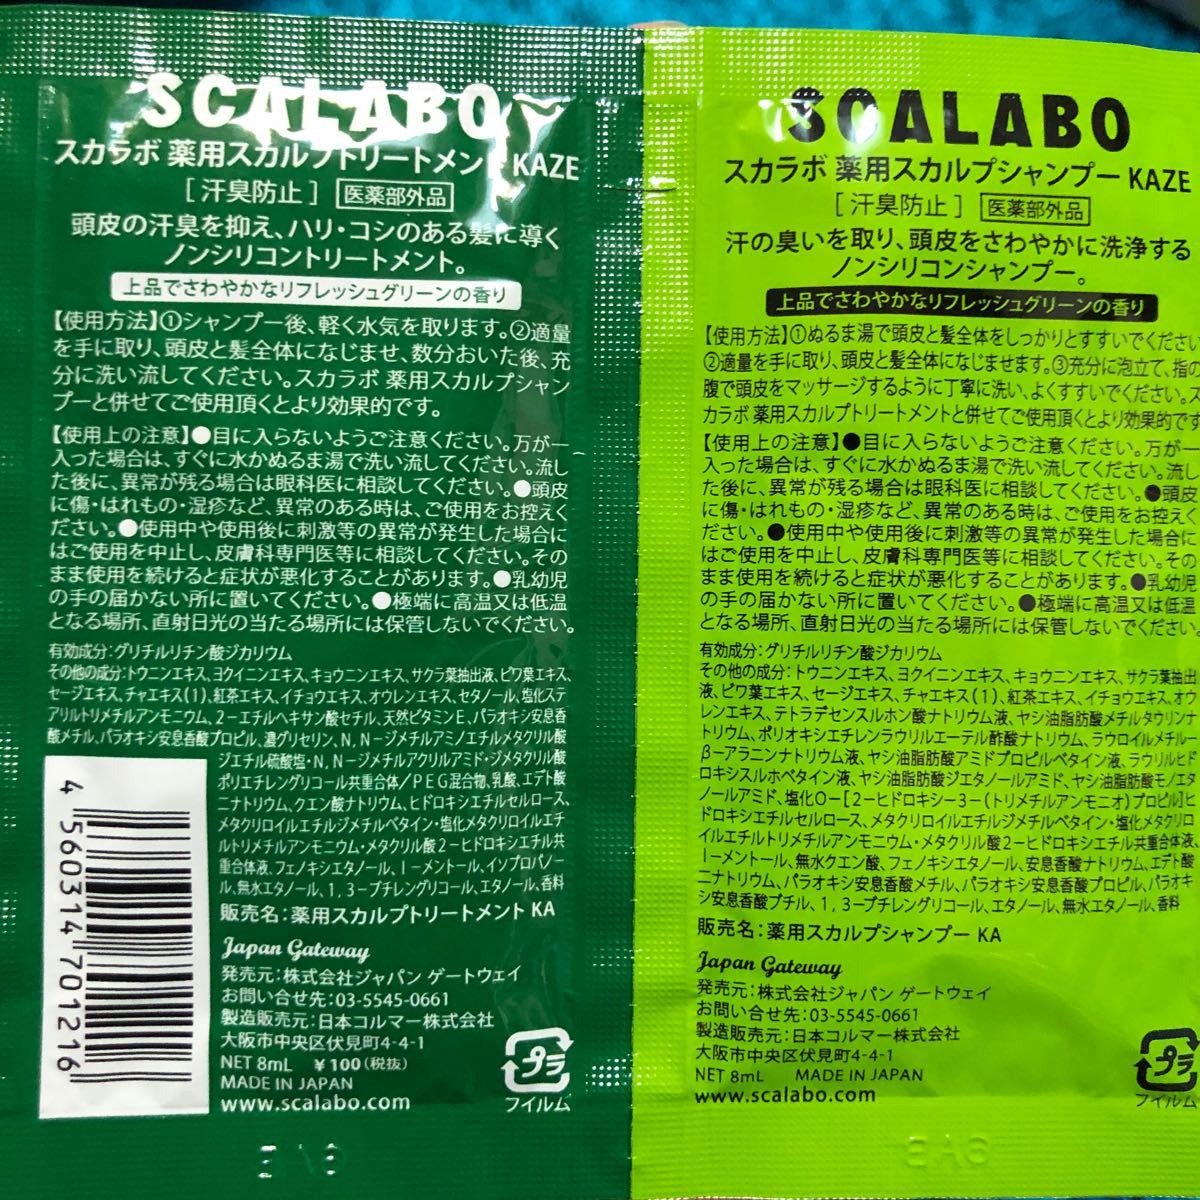 スカラボ薬用スカルプシャンプー&トリートメント5種類